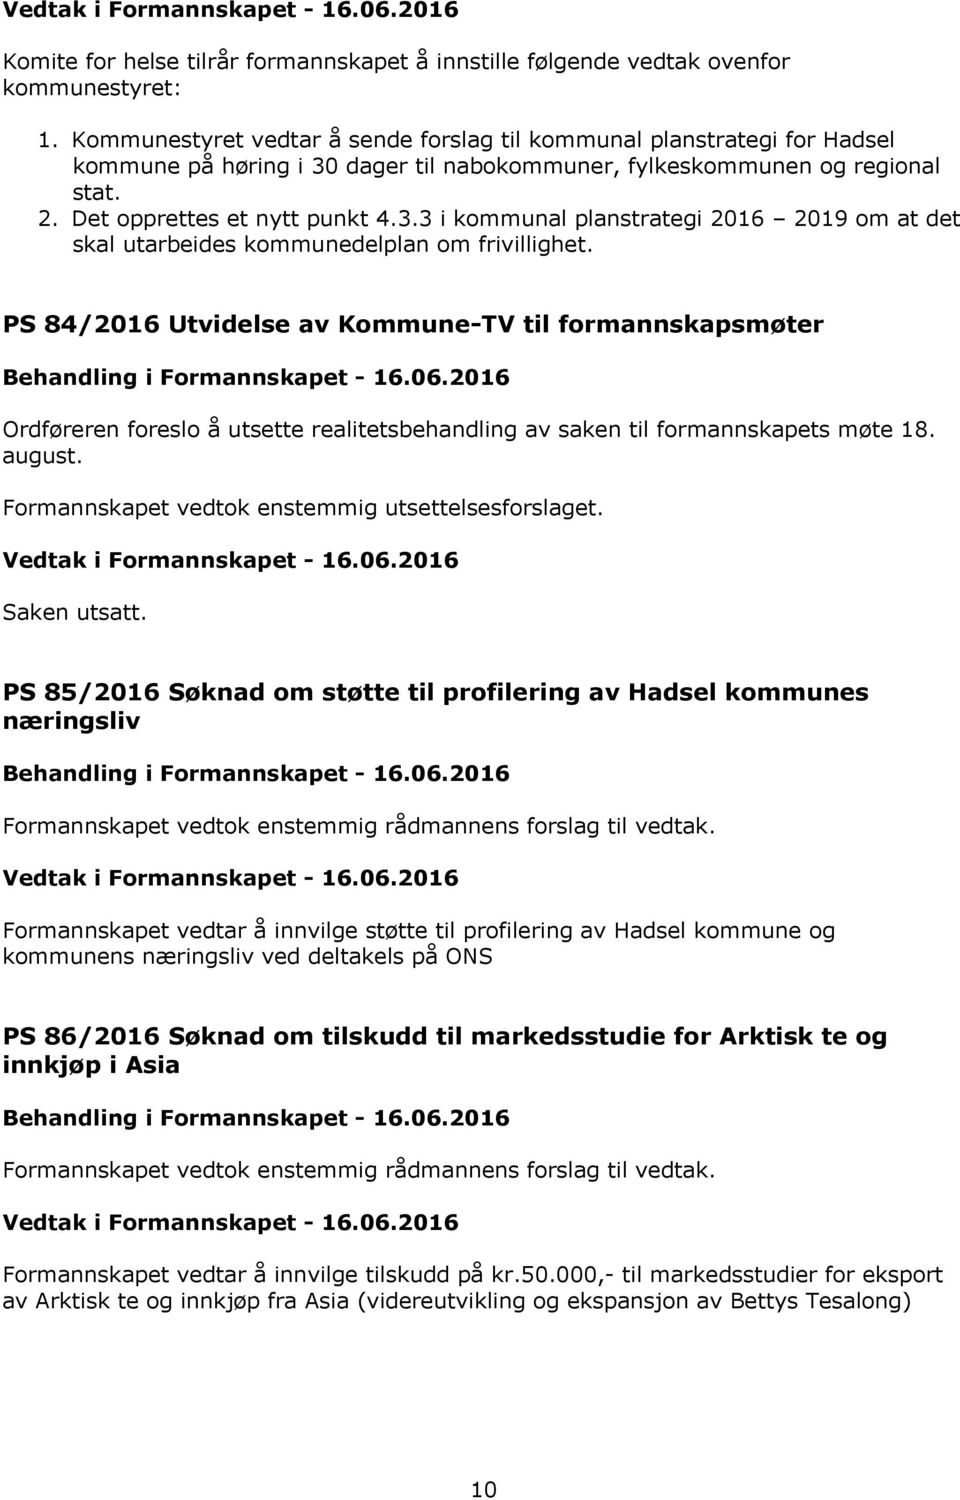 PS 84/2016 Utvidelse av Kommune-TV til formannskapsmøter Ordføreren foreslo å utsette realitetsbehandling av saken til formannskapets møte 18. august.